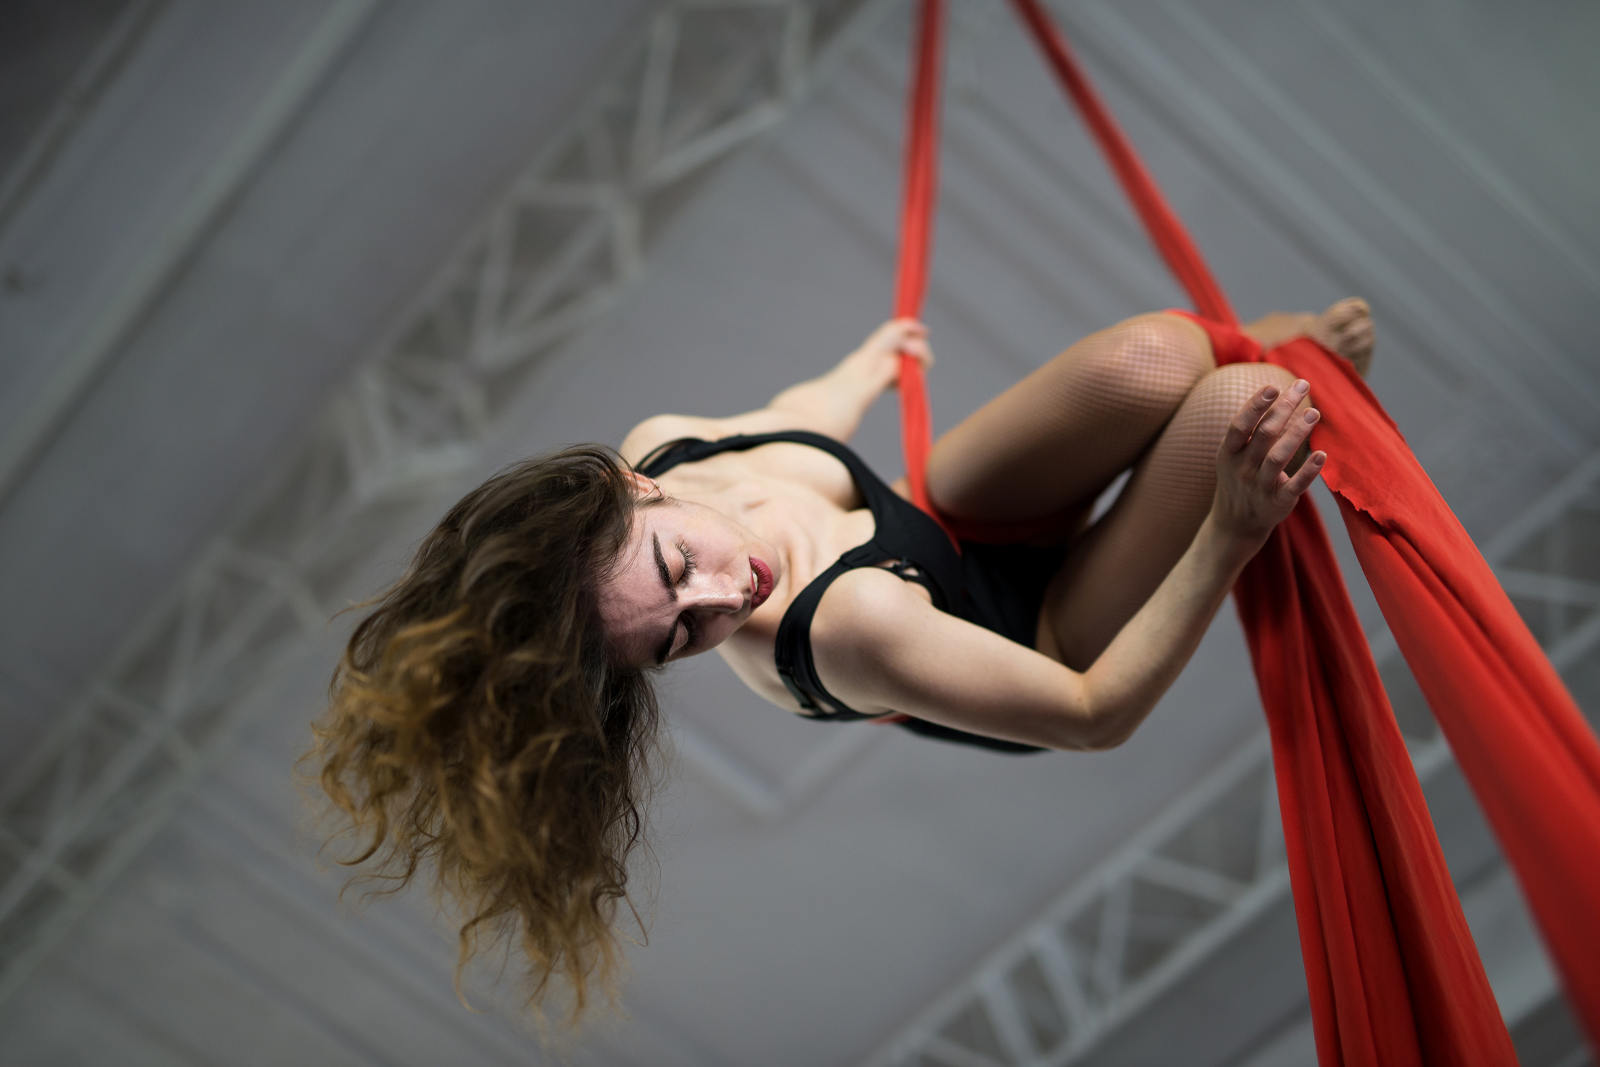 Elena-Aerial-Silks-Dancer